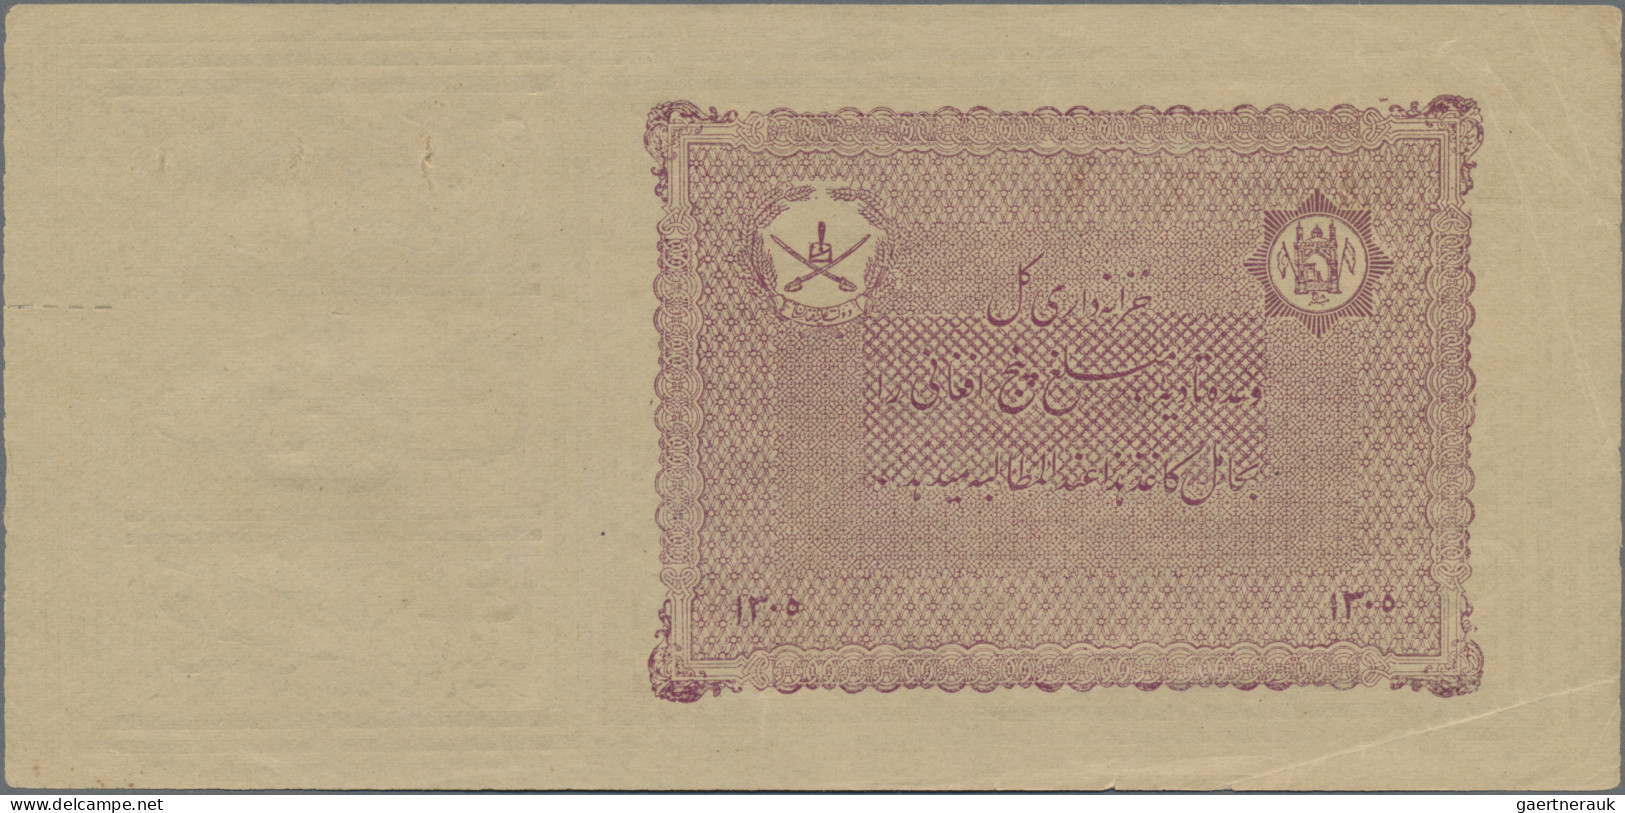 Afghanistan: 5 Afghanis ND(1926), Seldom Seen Early Note Type, Uniface Print, Ne - Afghanistán